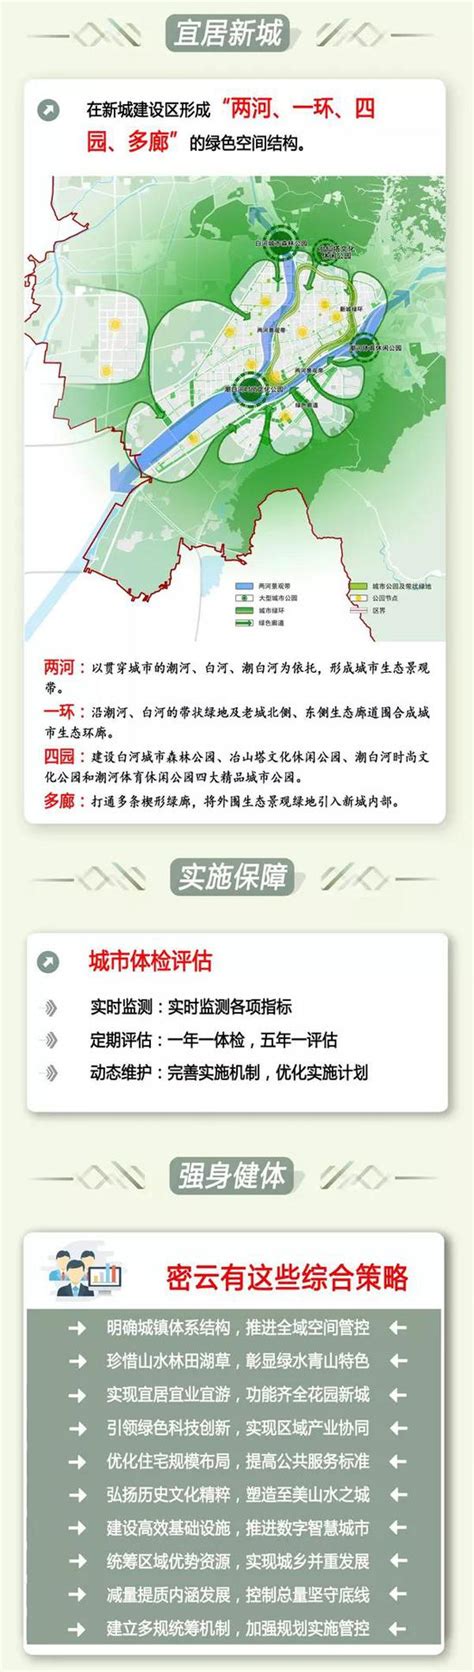 延庆融媒成为北京首家接入“北京云” 平台的区级融媒体中心-搜狐大视野-搜狐新闻